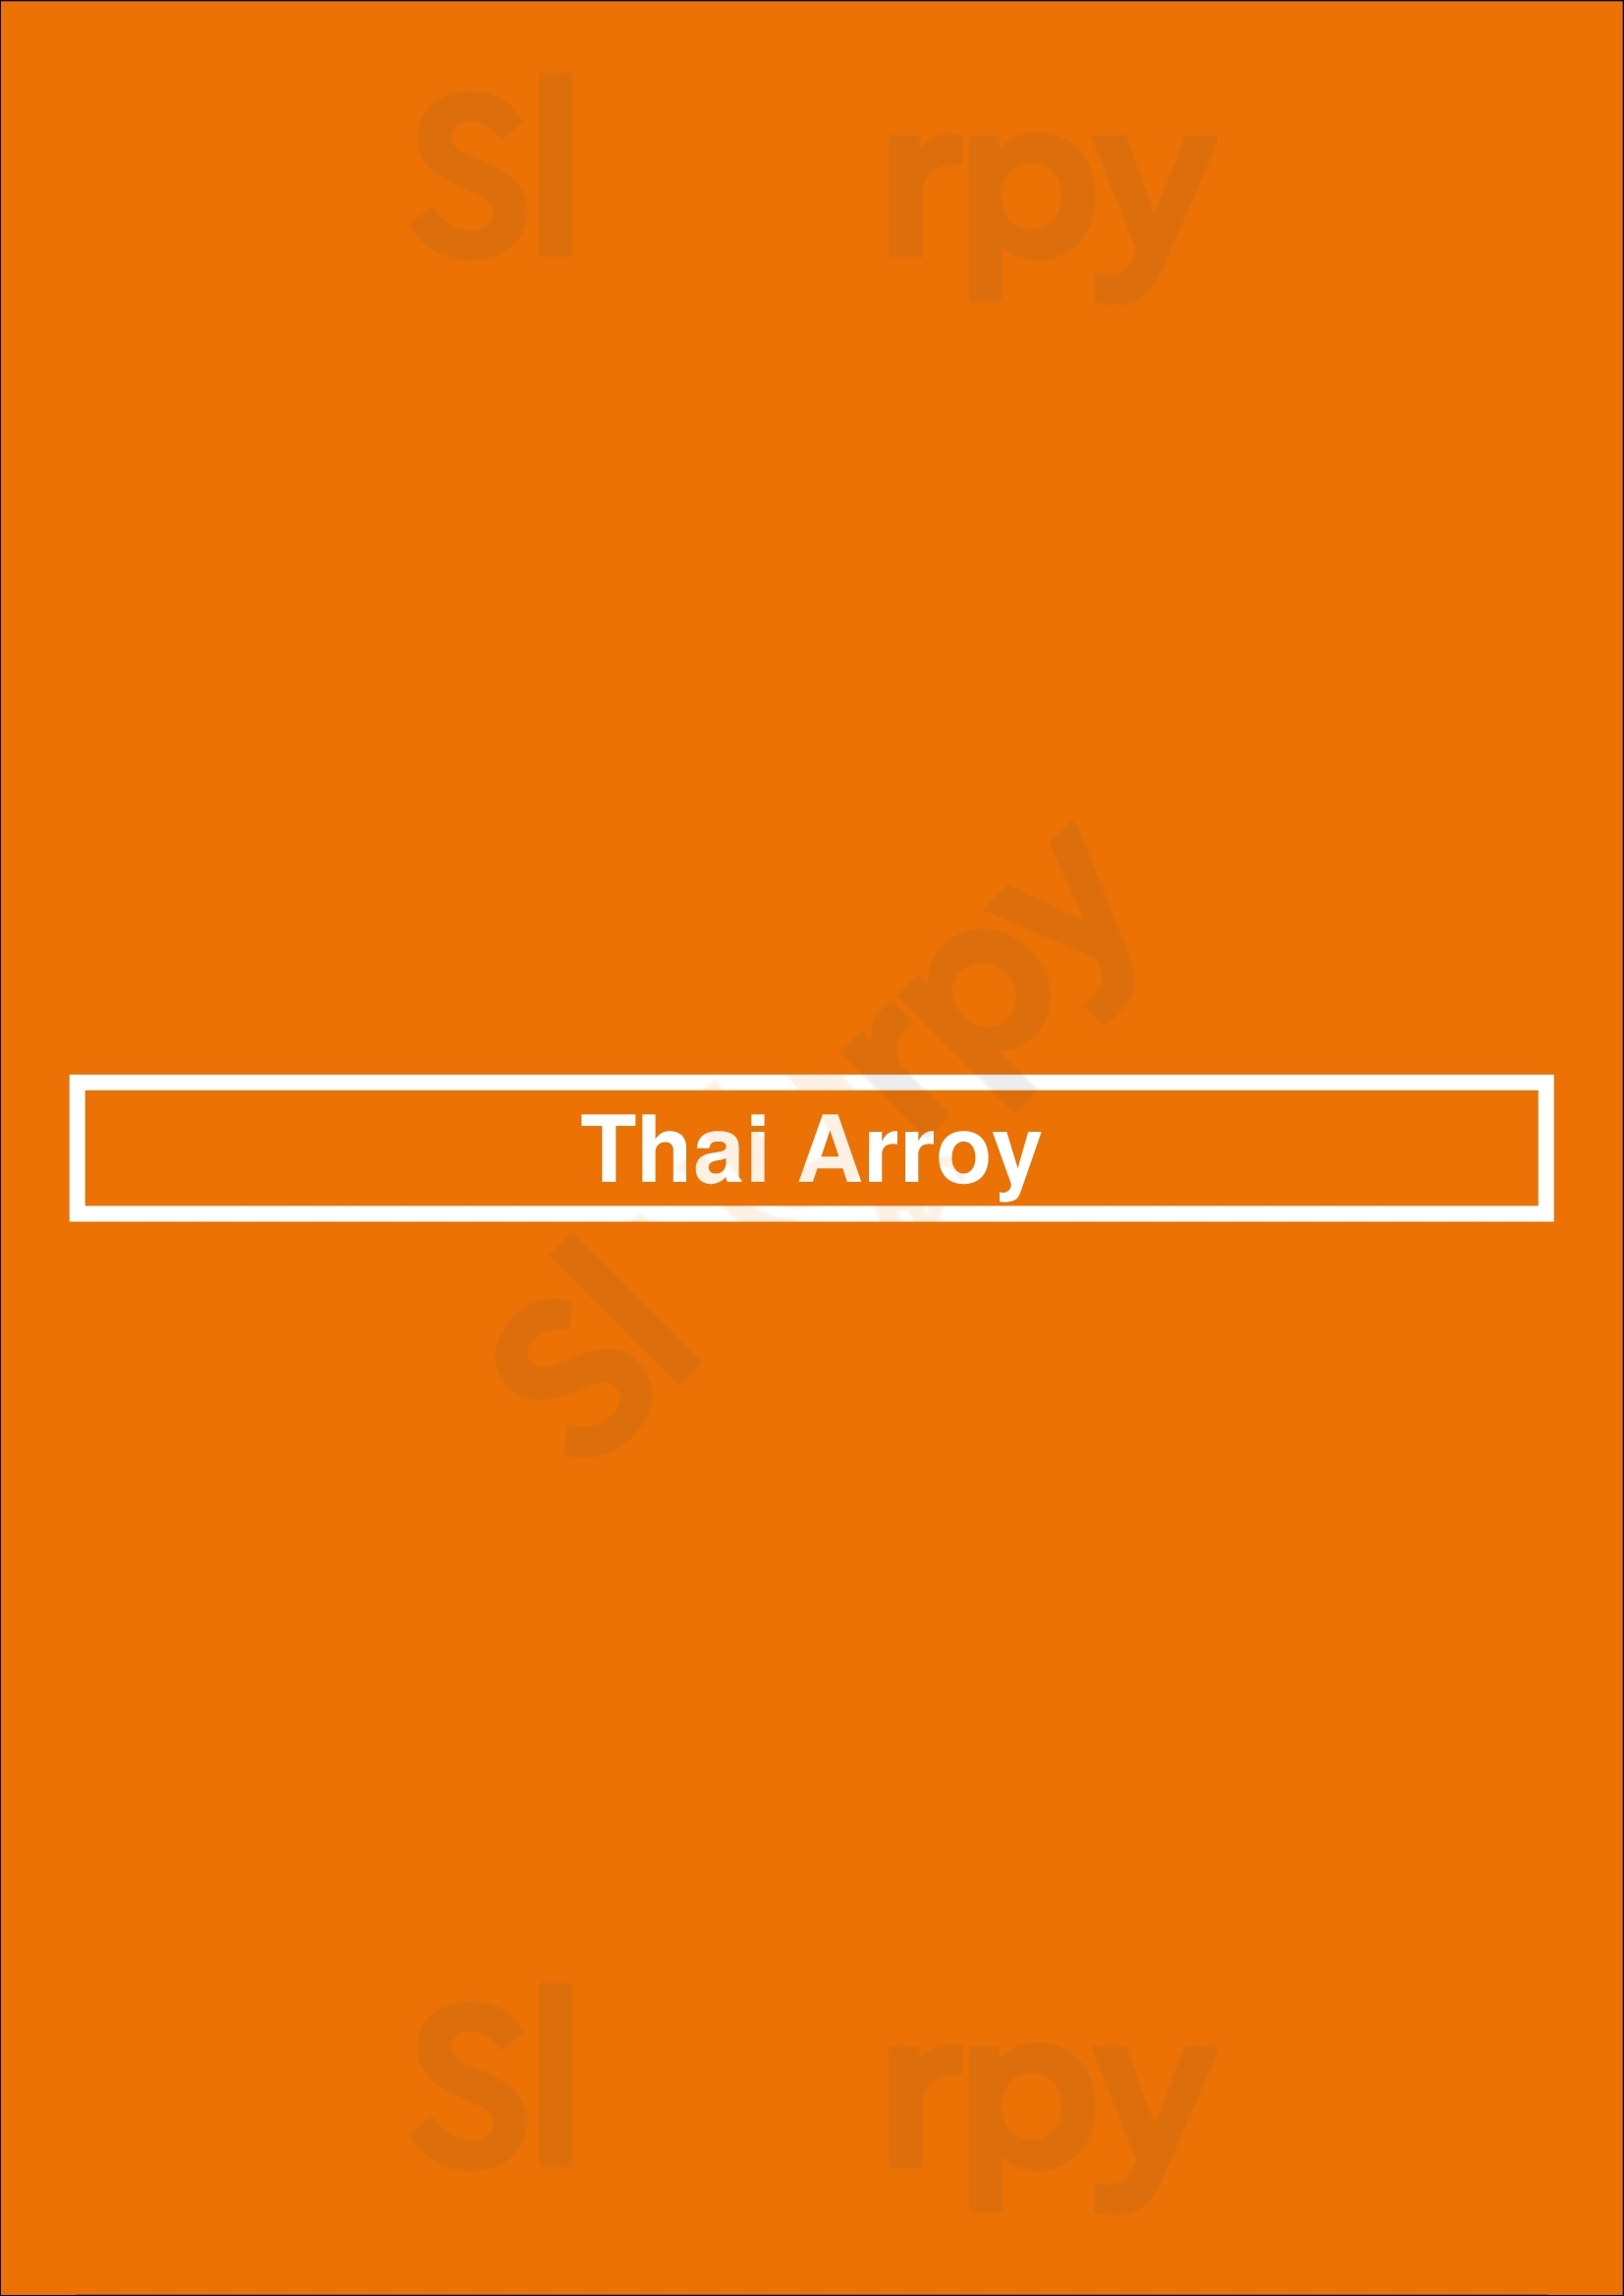 Thai Arroy Virginia Beach Menu - 1